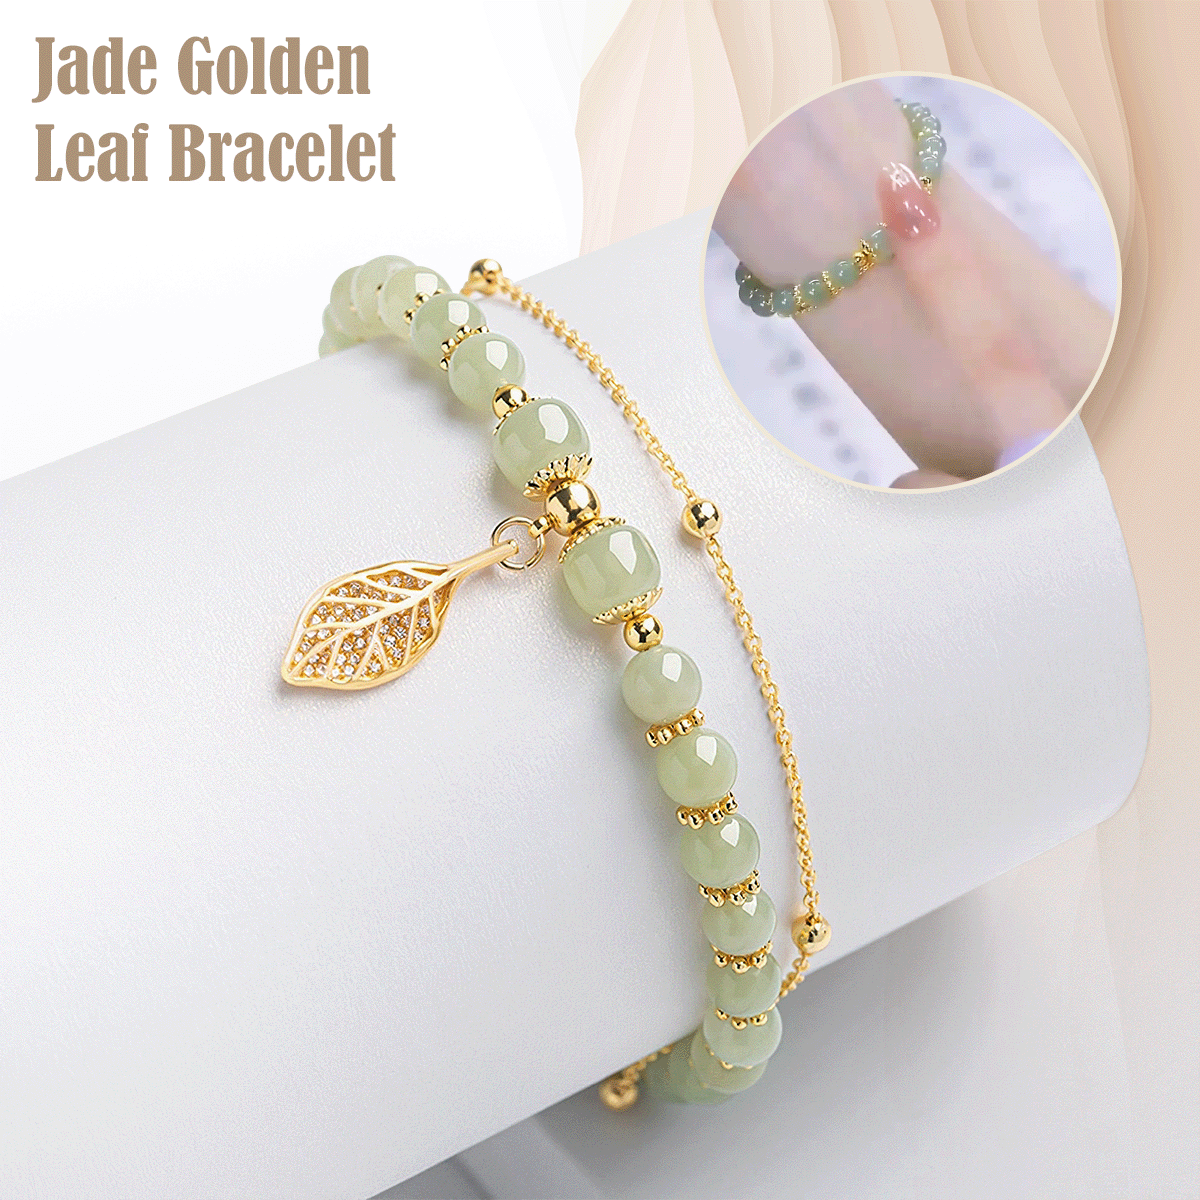 Jade Golden Leaf Bracelet